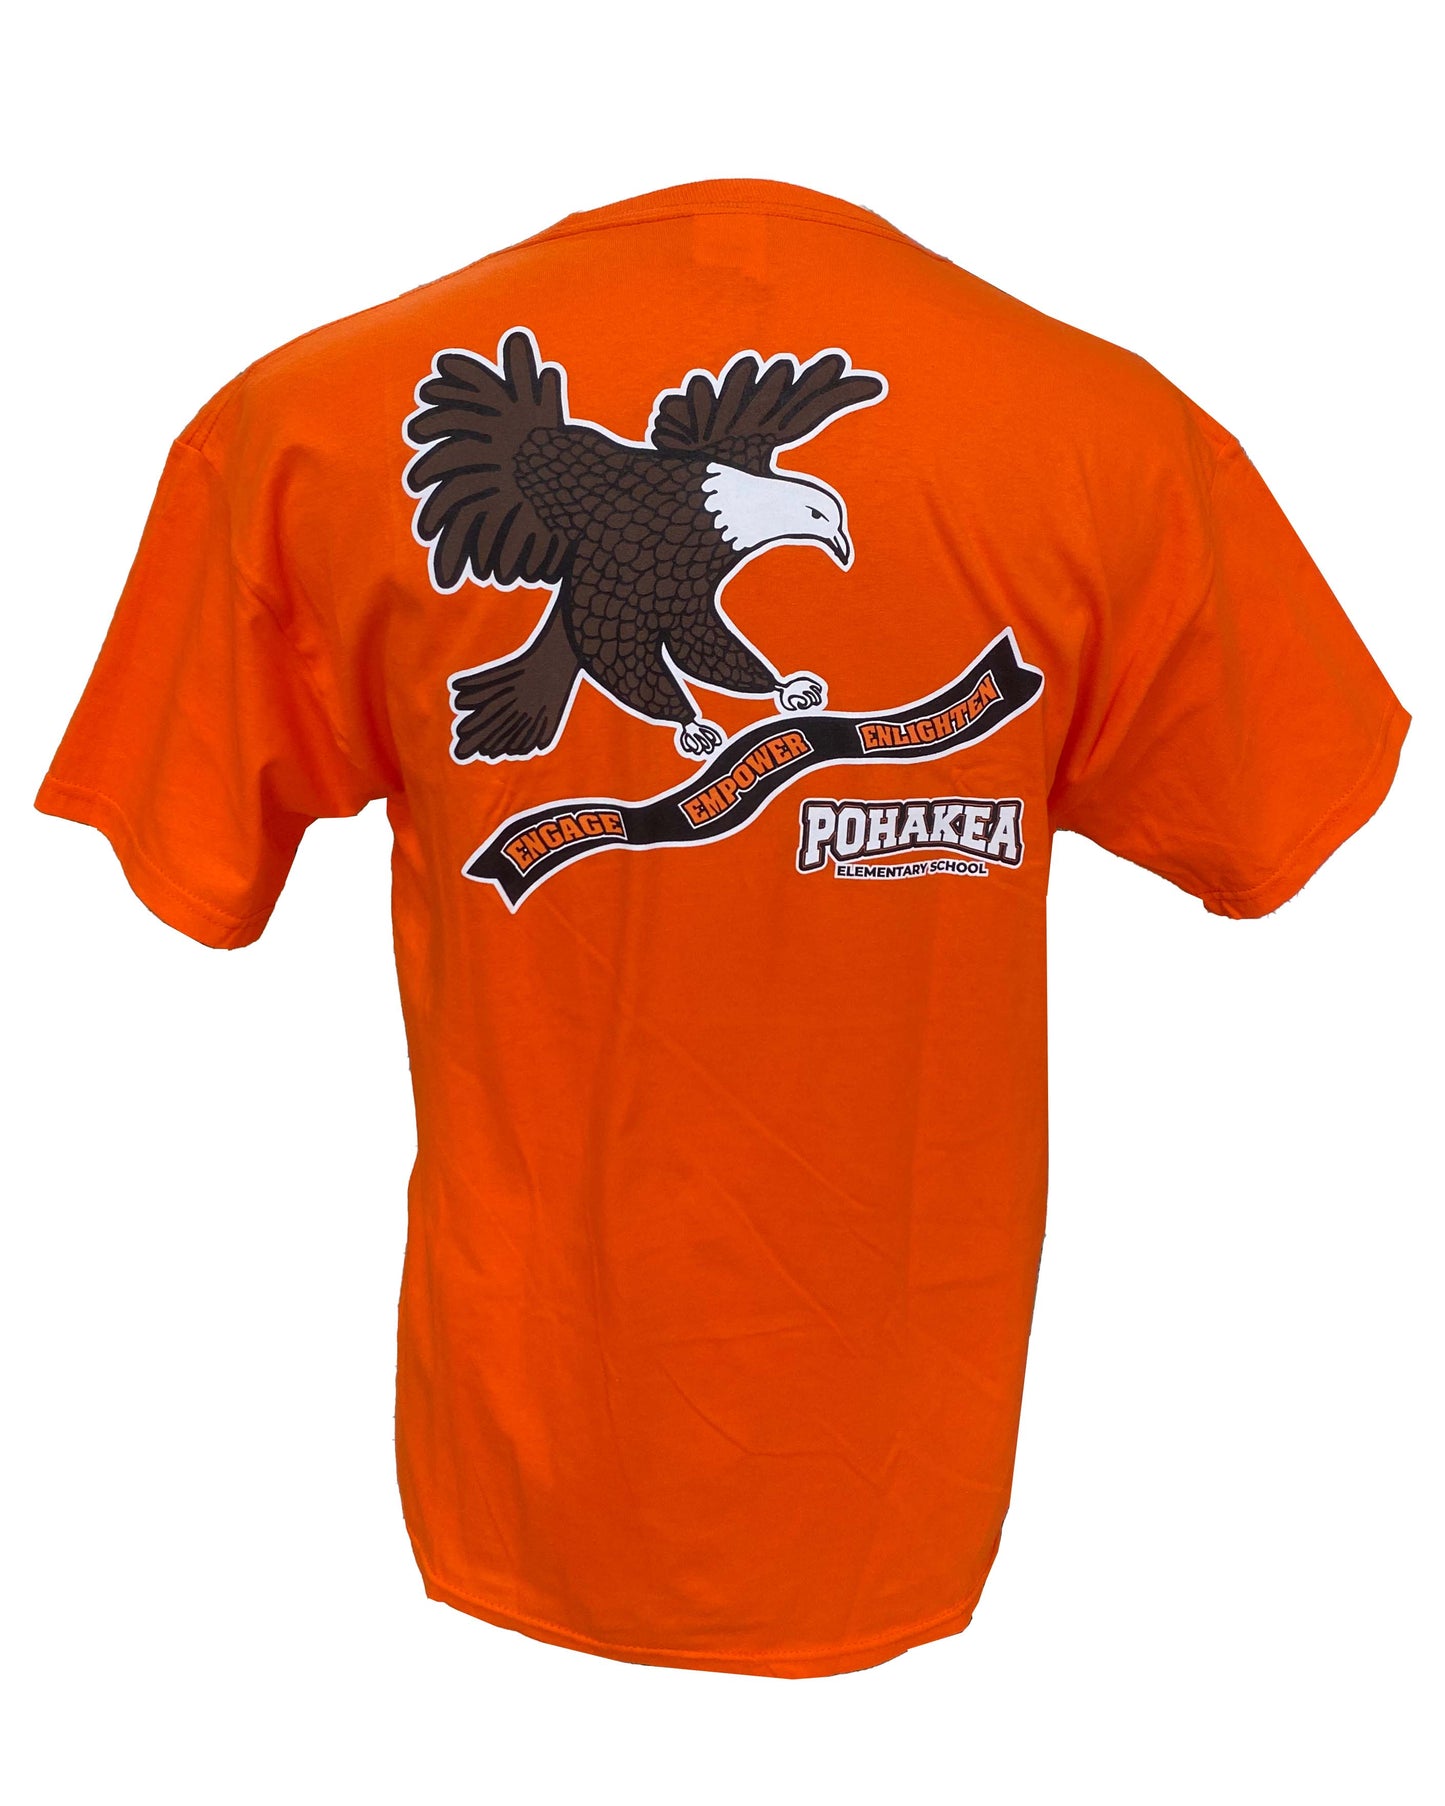 Pohakea Eagle Logo T-Shirt